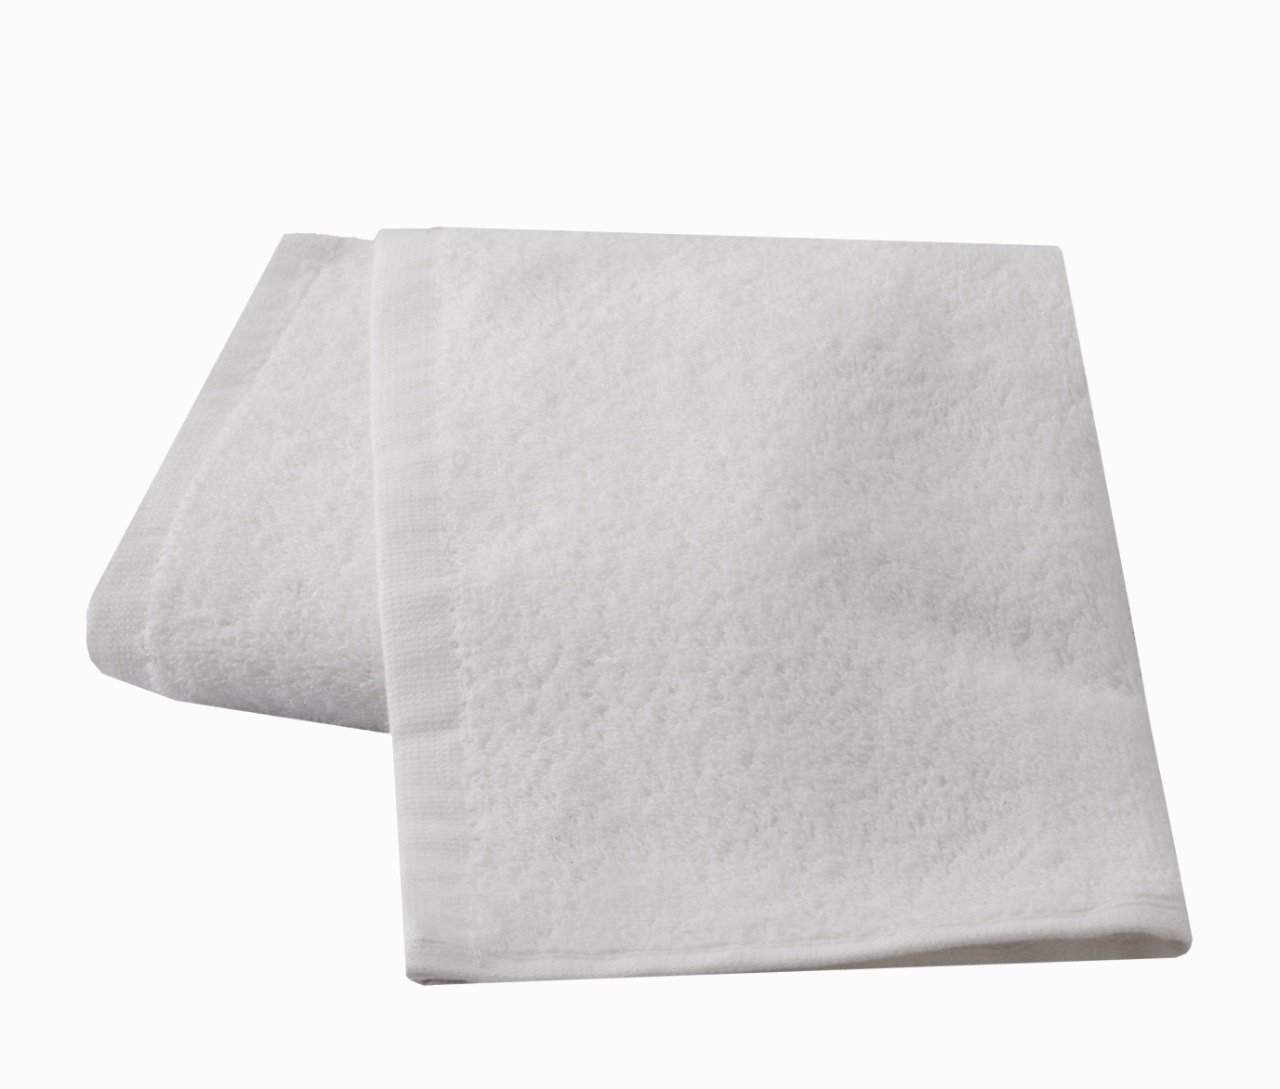 Antibacterial face Towels